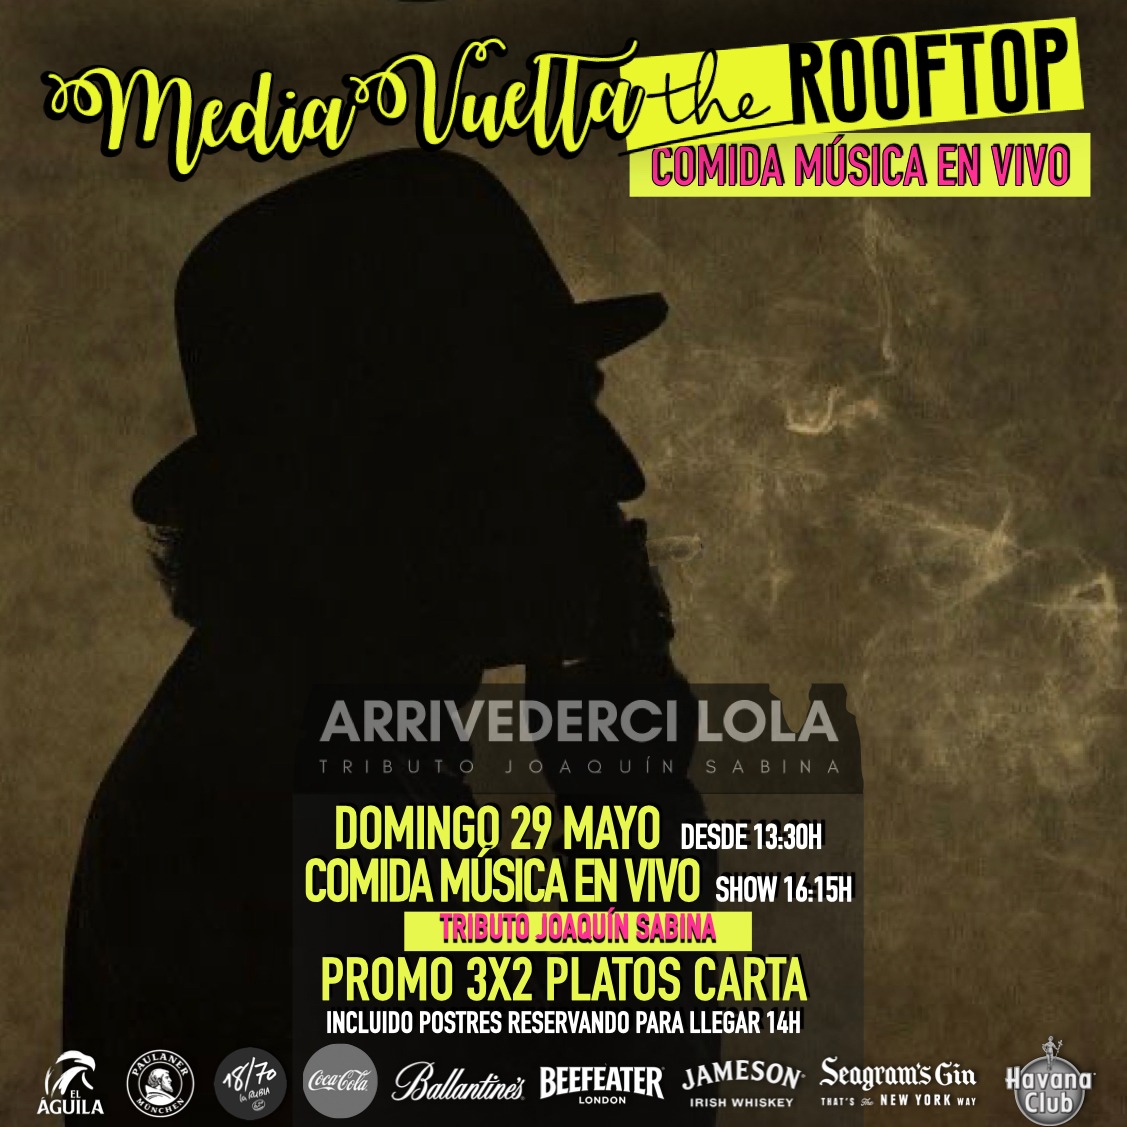 Actuación de Arrivederci Lola 'Tributo a Joaquín Sabina' y Almuerzo en MediaVuelta The Rooftop Majadahonda